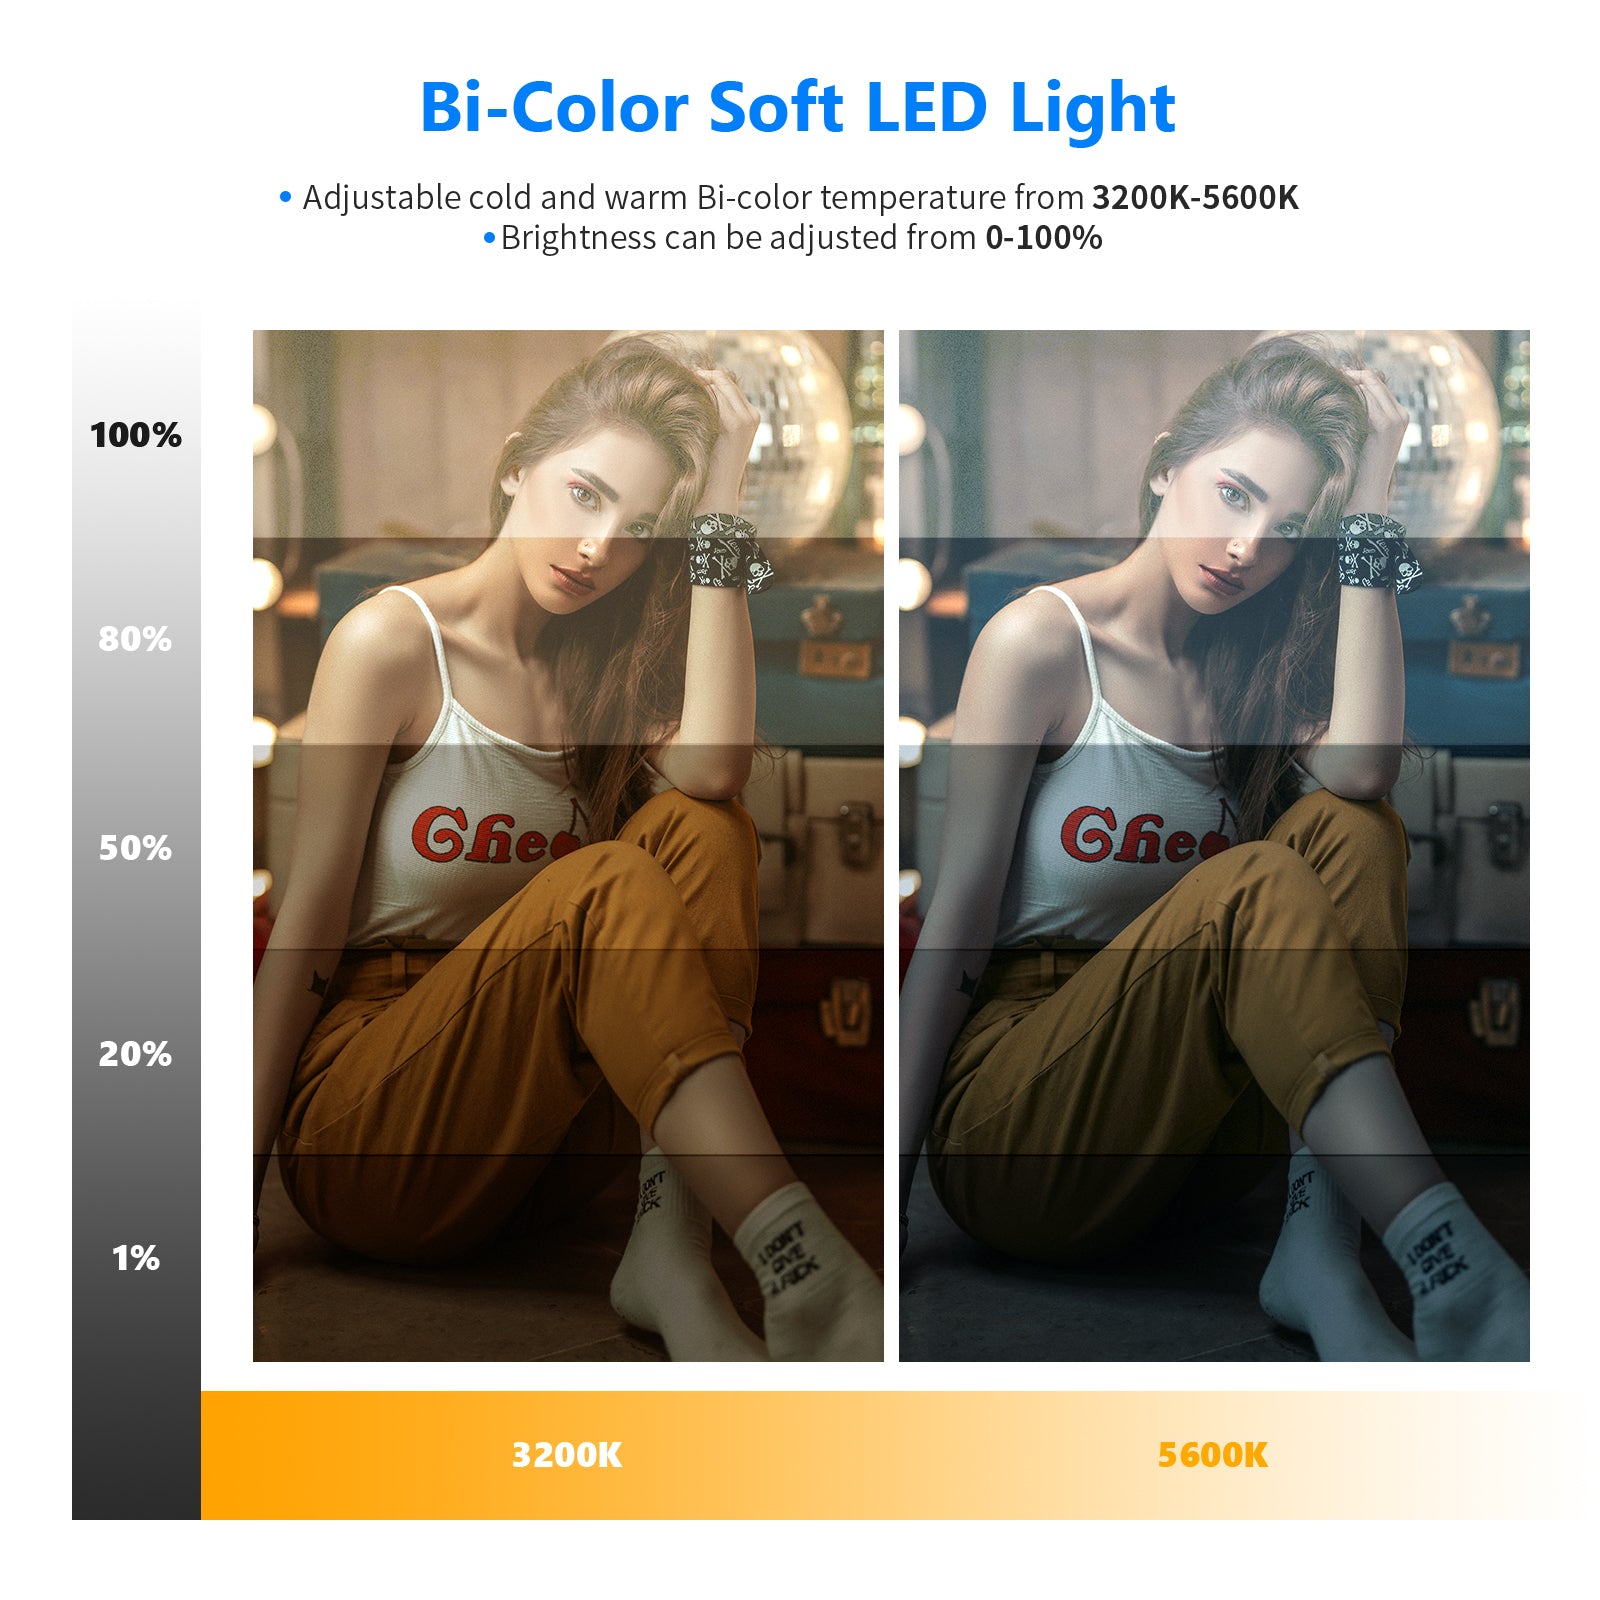 NEEWER NL288A Bi-Color LED Panel Light Kit